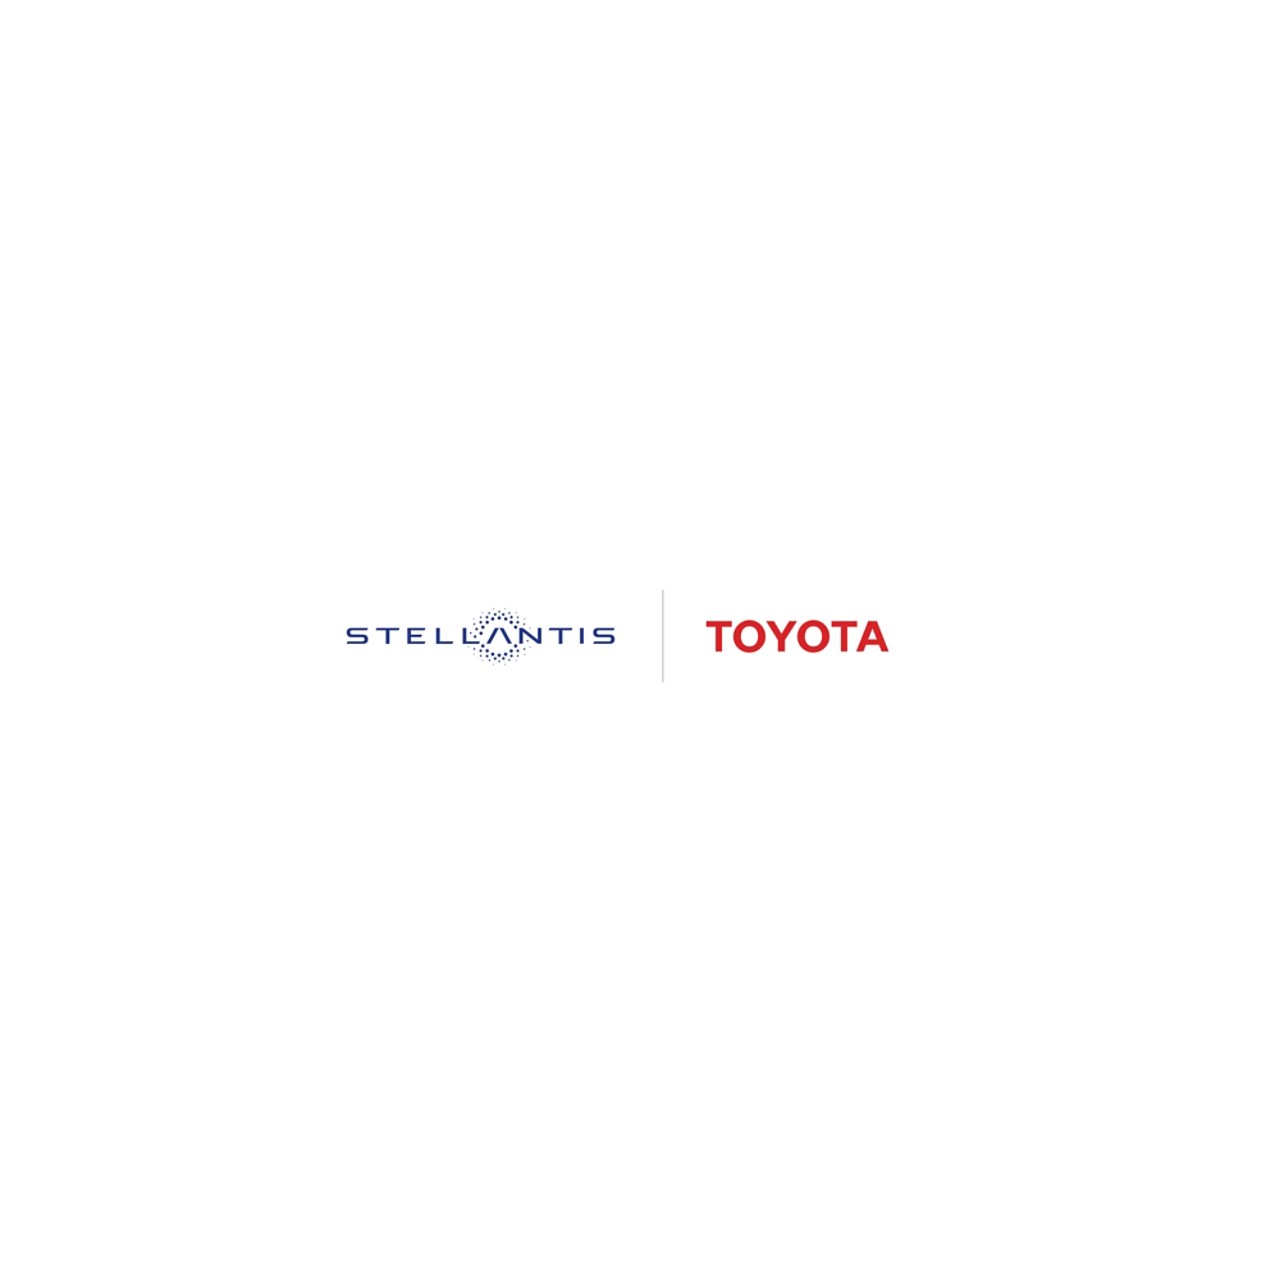 ToyotaStellantislogo-large